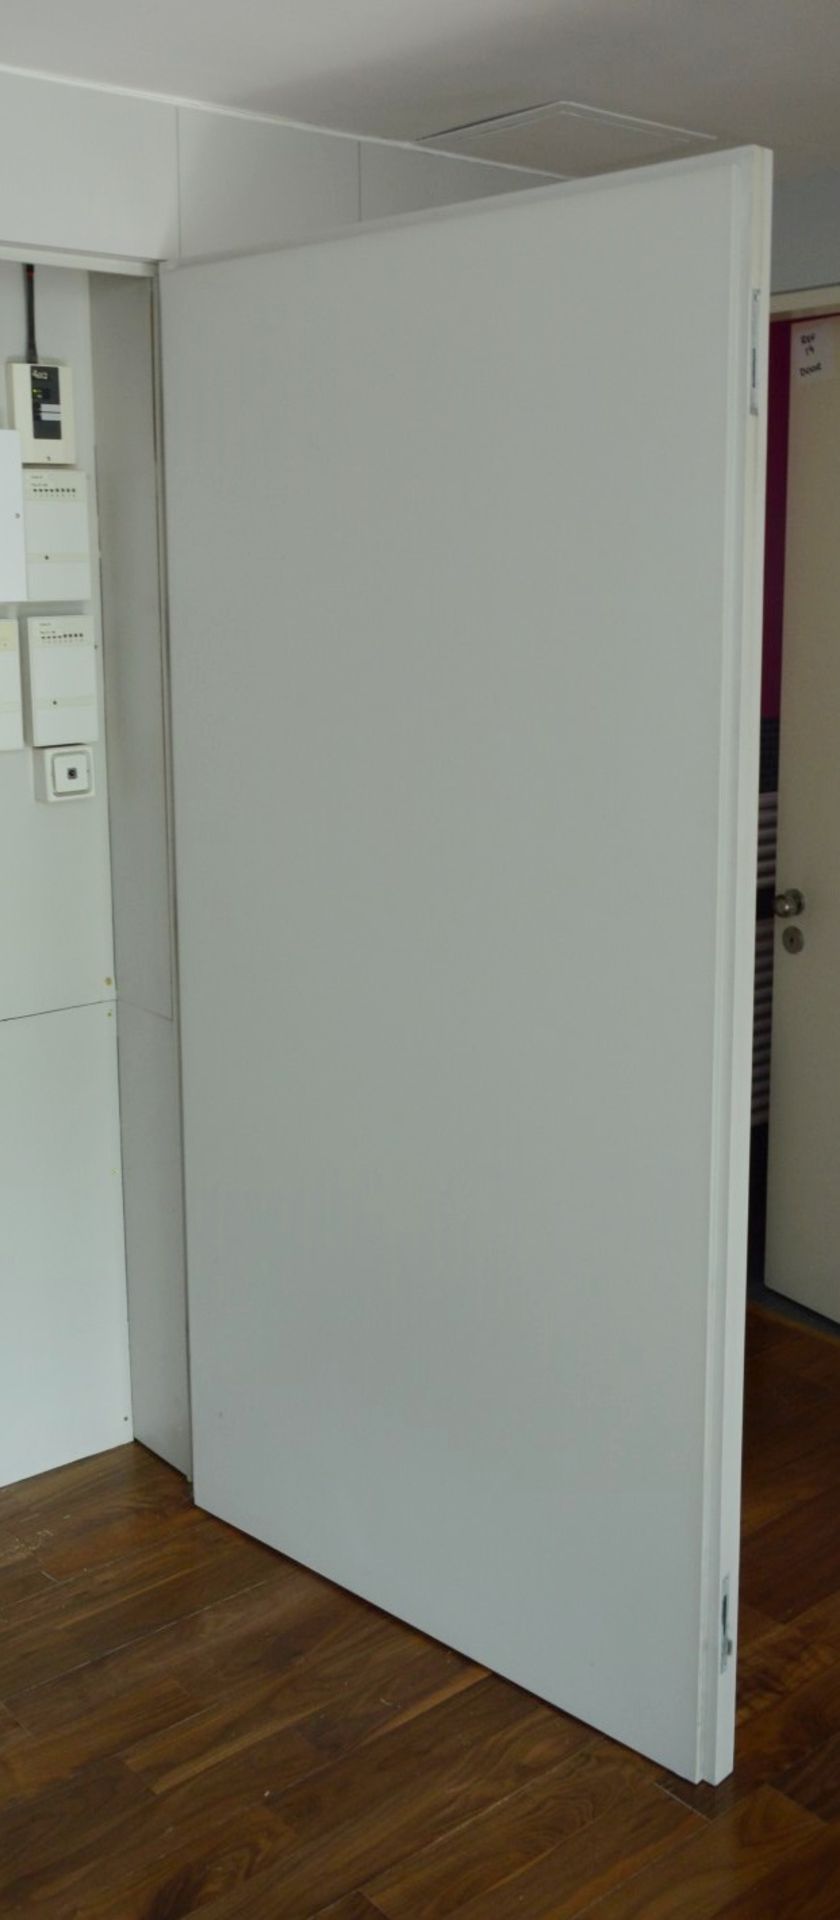 2 x Internal Cupboard Doors - Each Door Measures H102 x W196.5 x D6cm - Ref 25 - CL230 - Location: